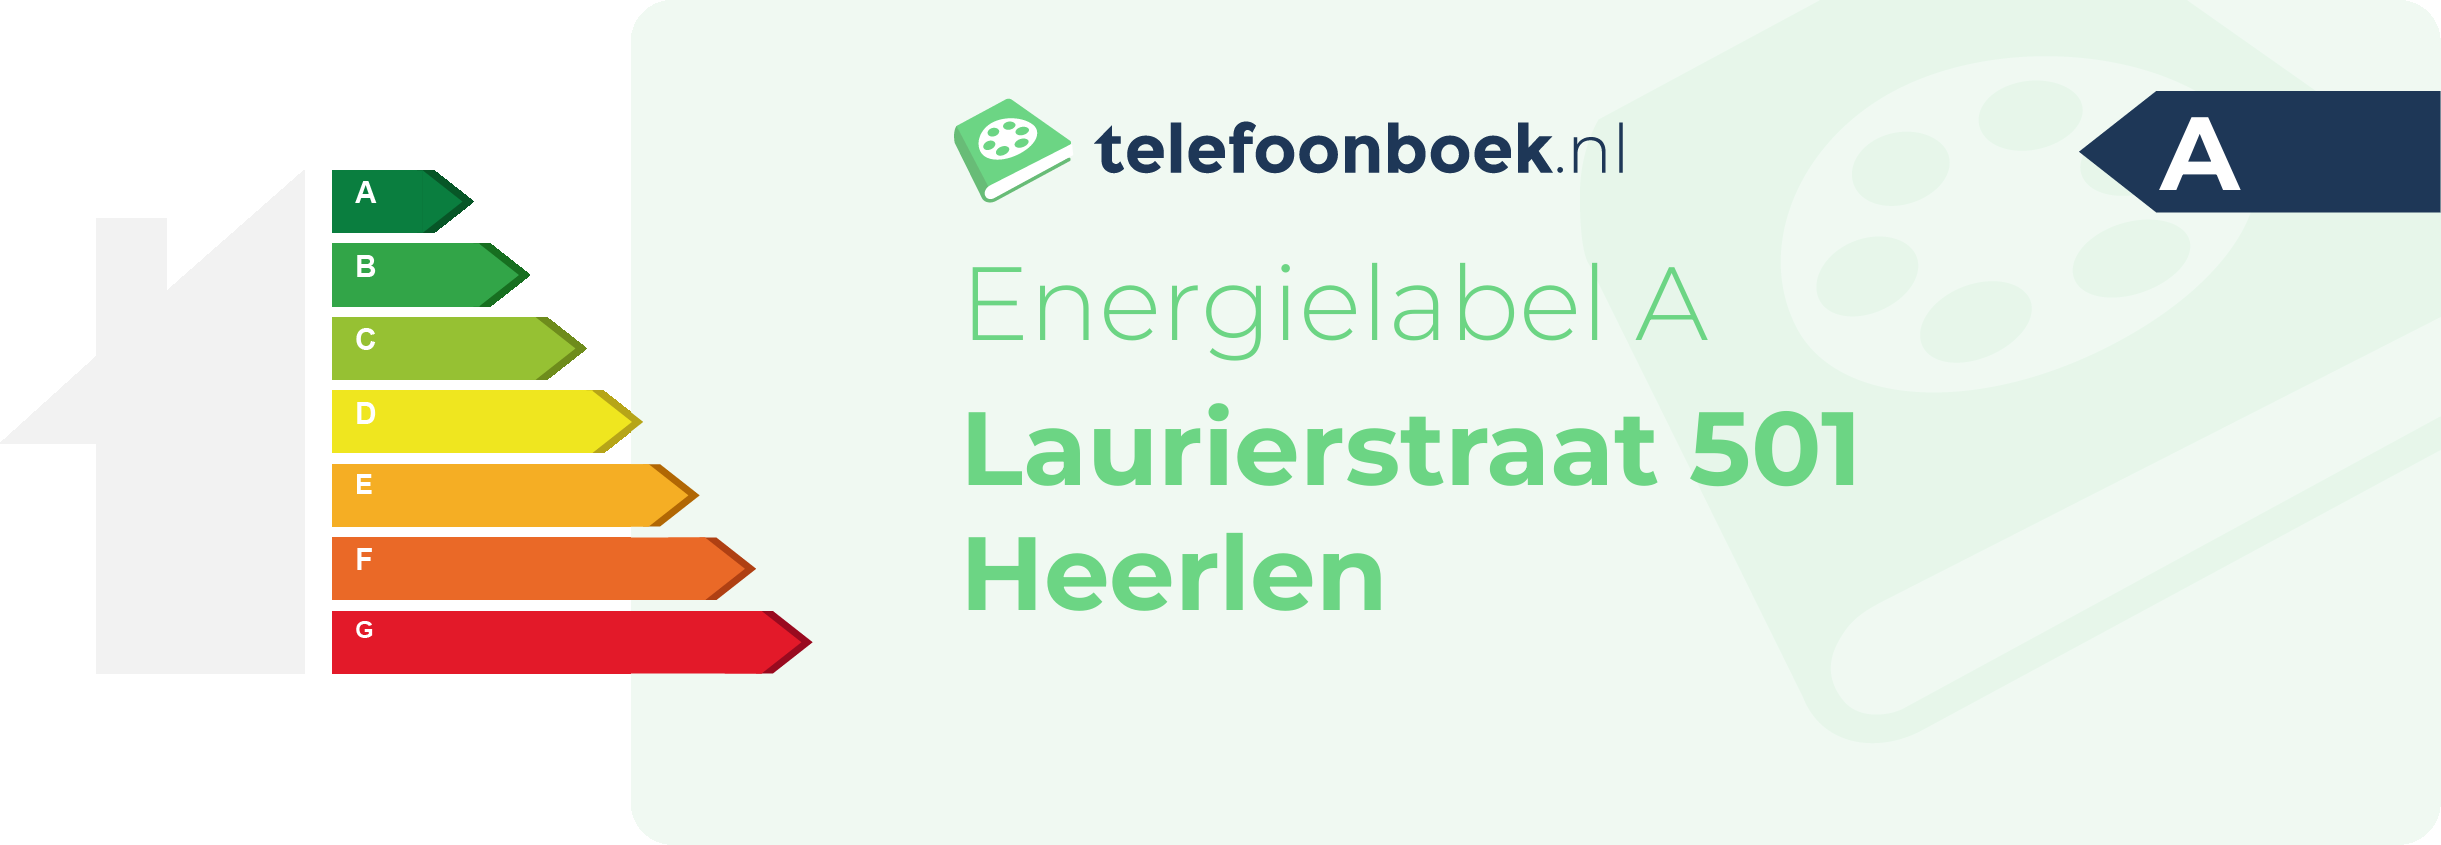 Energielabel Laurierstraat 501 Heerlen